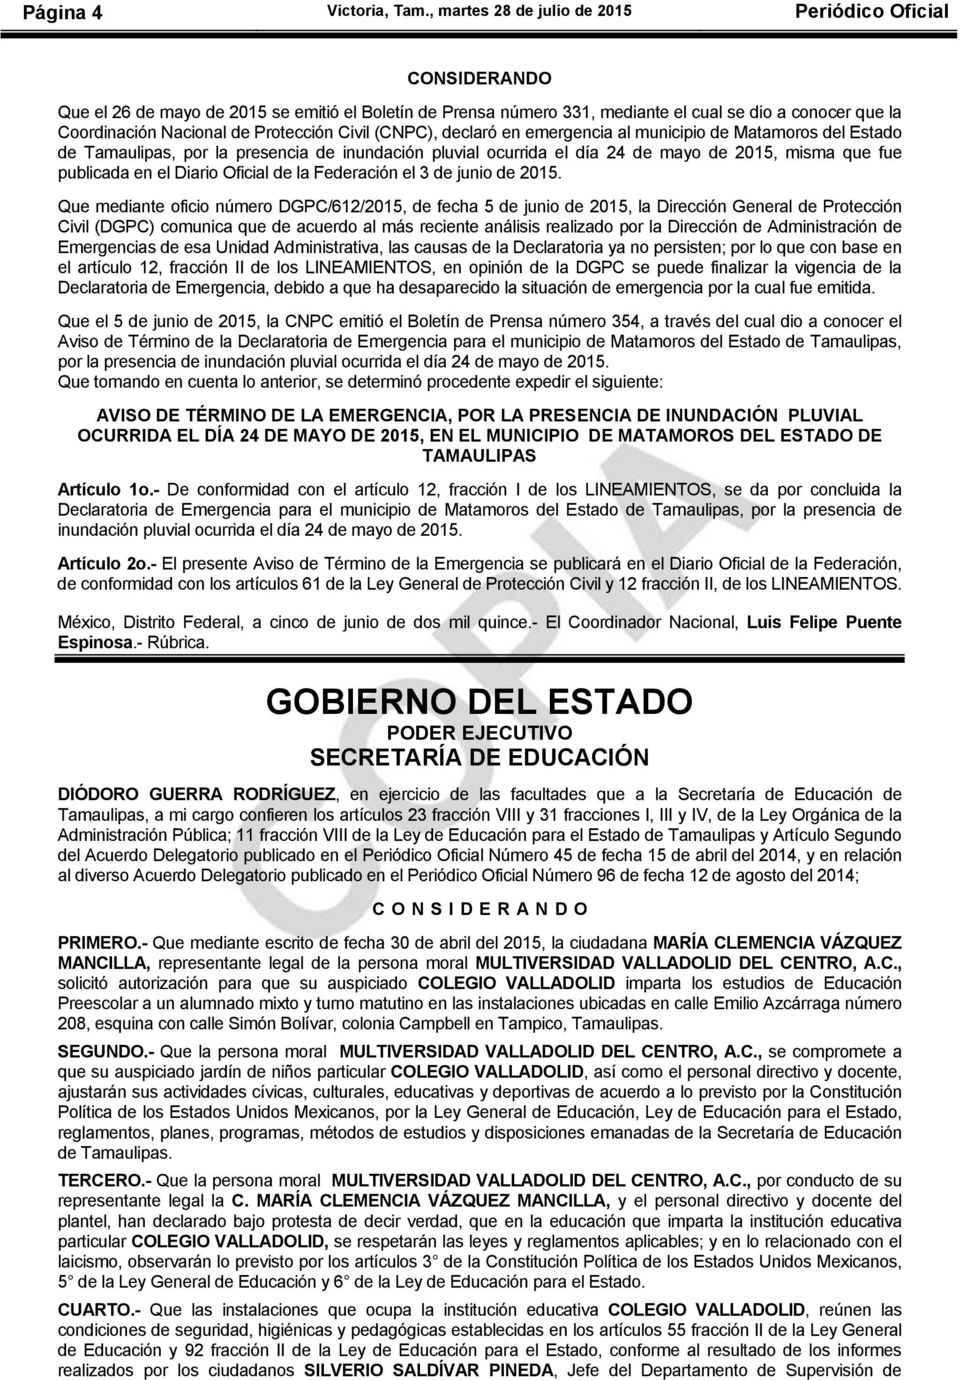 Protección Civil (CNPC), declaró en emergencia al municipio de Matamoros del Estado de Tamaulipas, por la presencia de inundación pluvial ocurrida el día 24 de mayo de 2015, misma que fue publicada